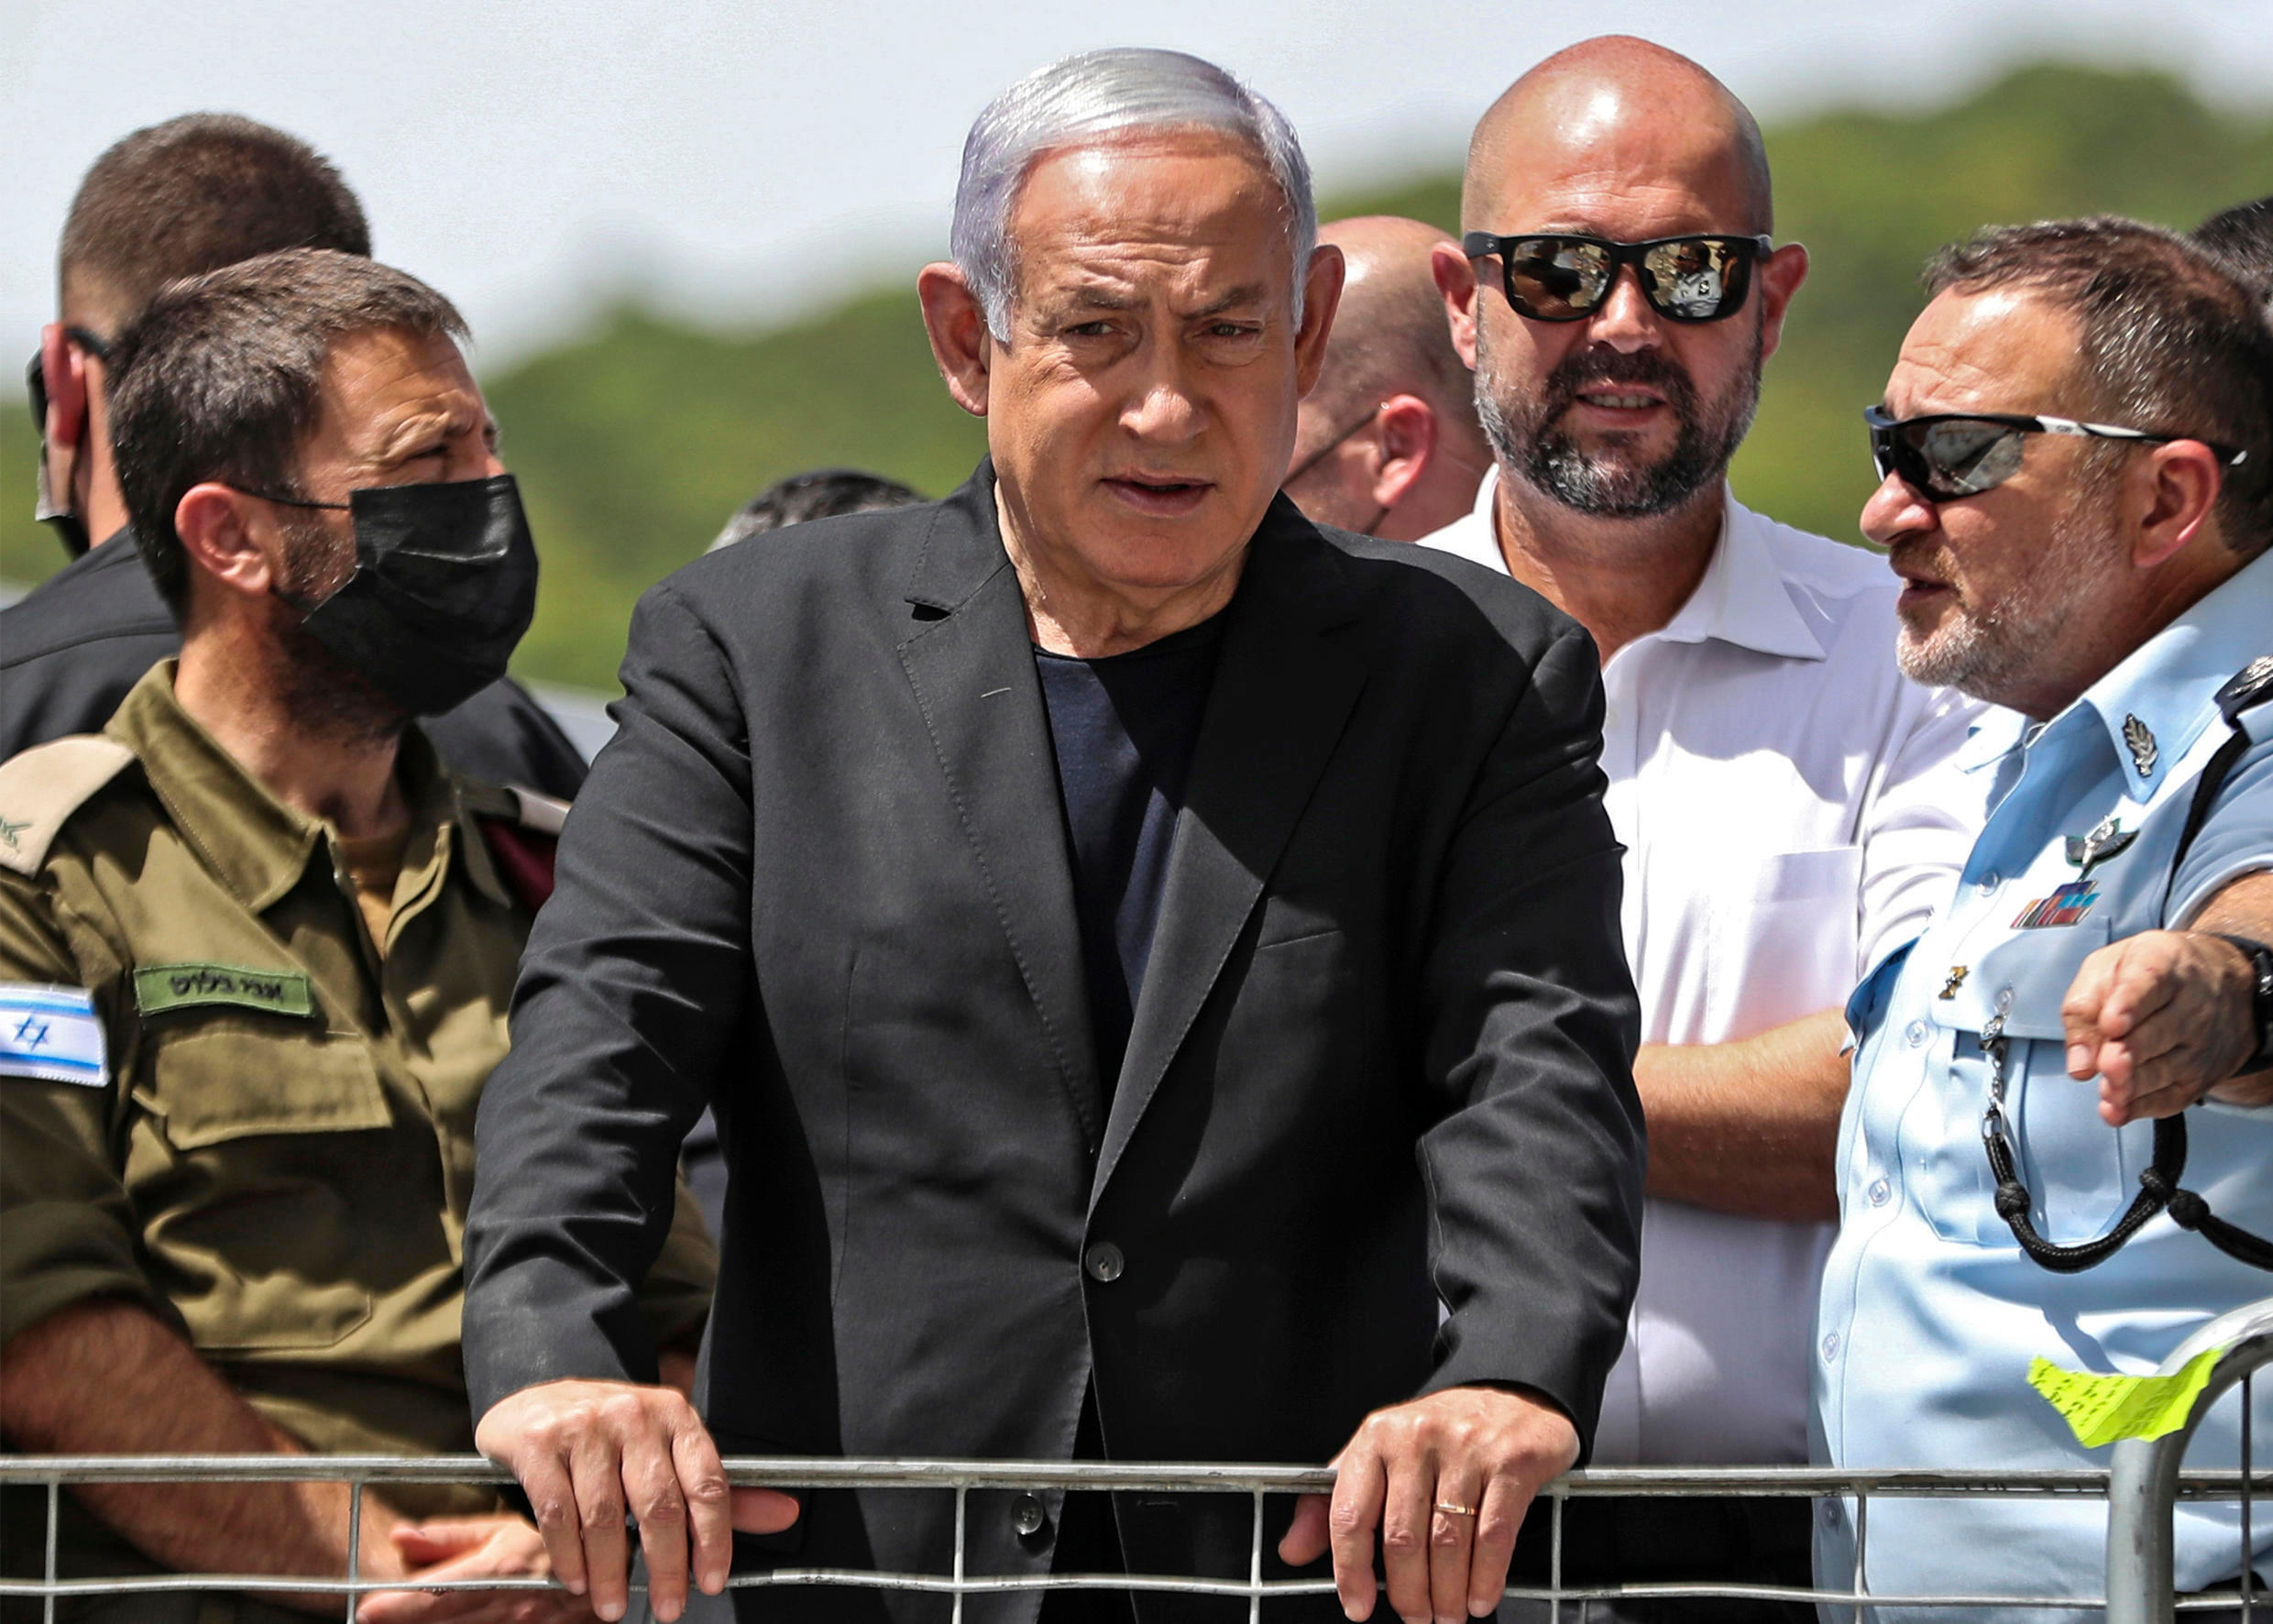 内塔尼亚胡向以色列总统申请延长组阁期限